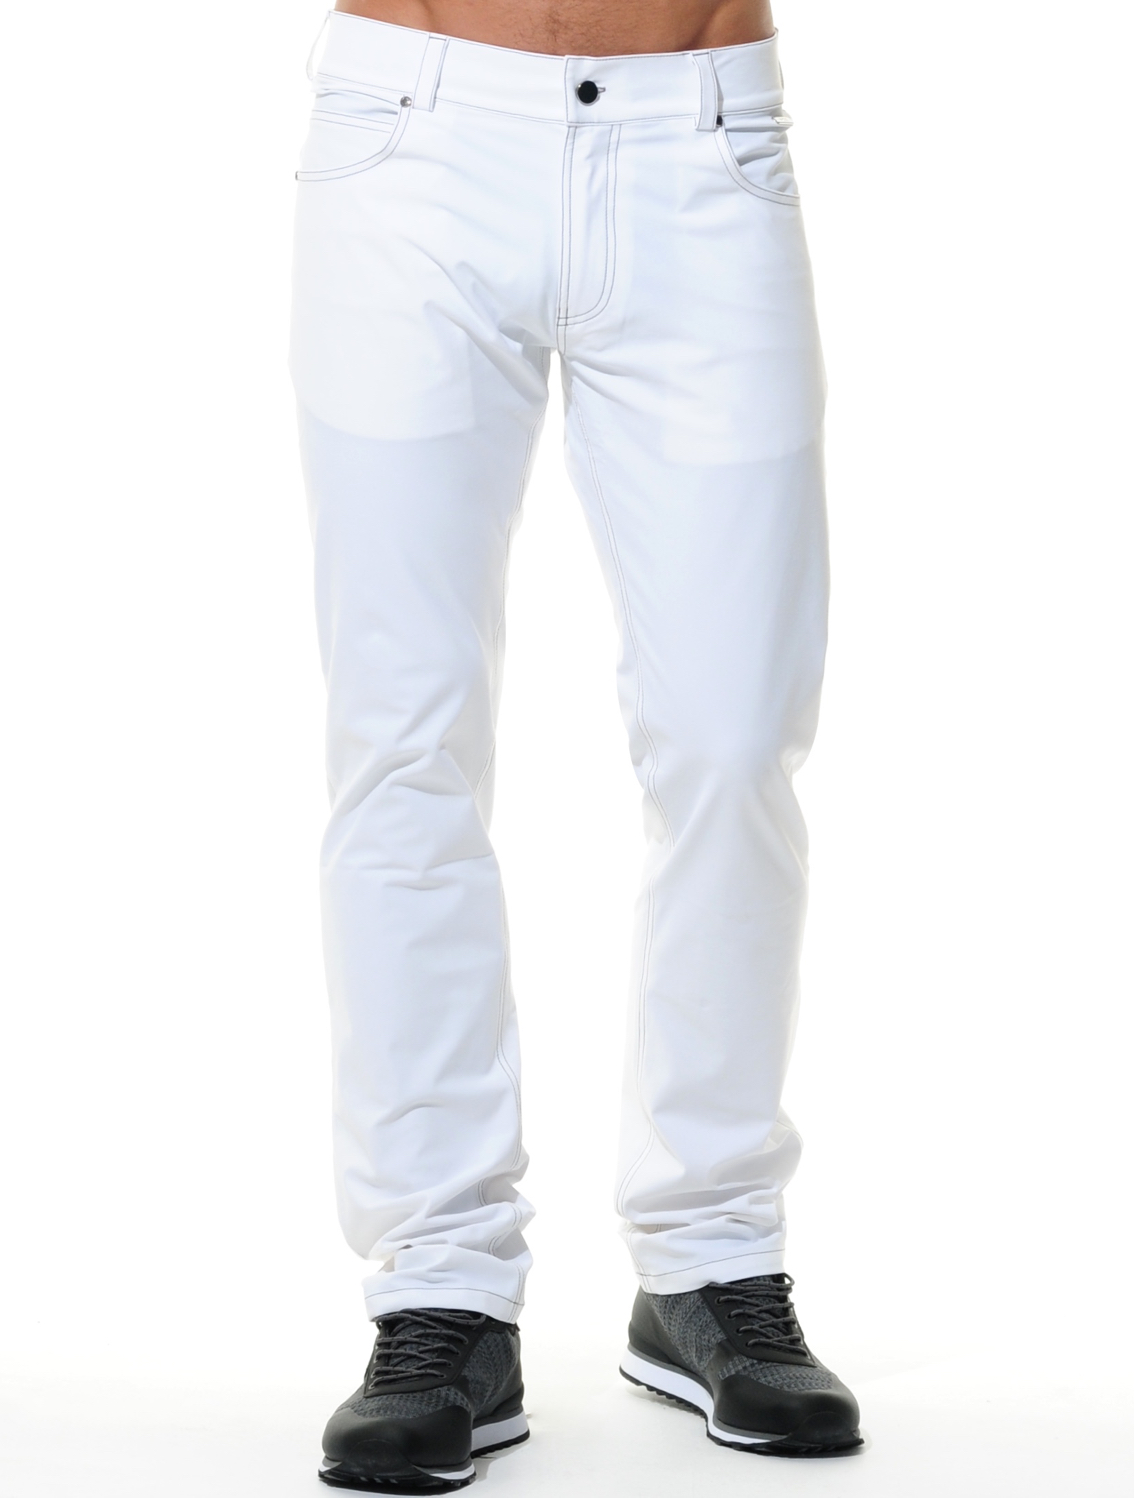 4way stretch 5pocket pants white 